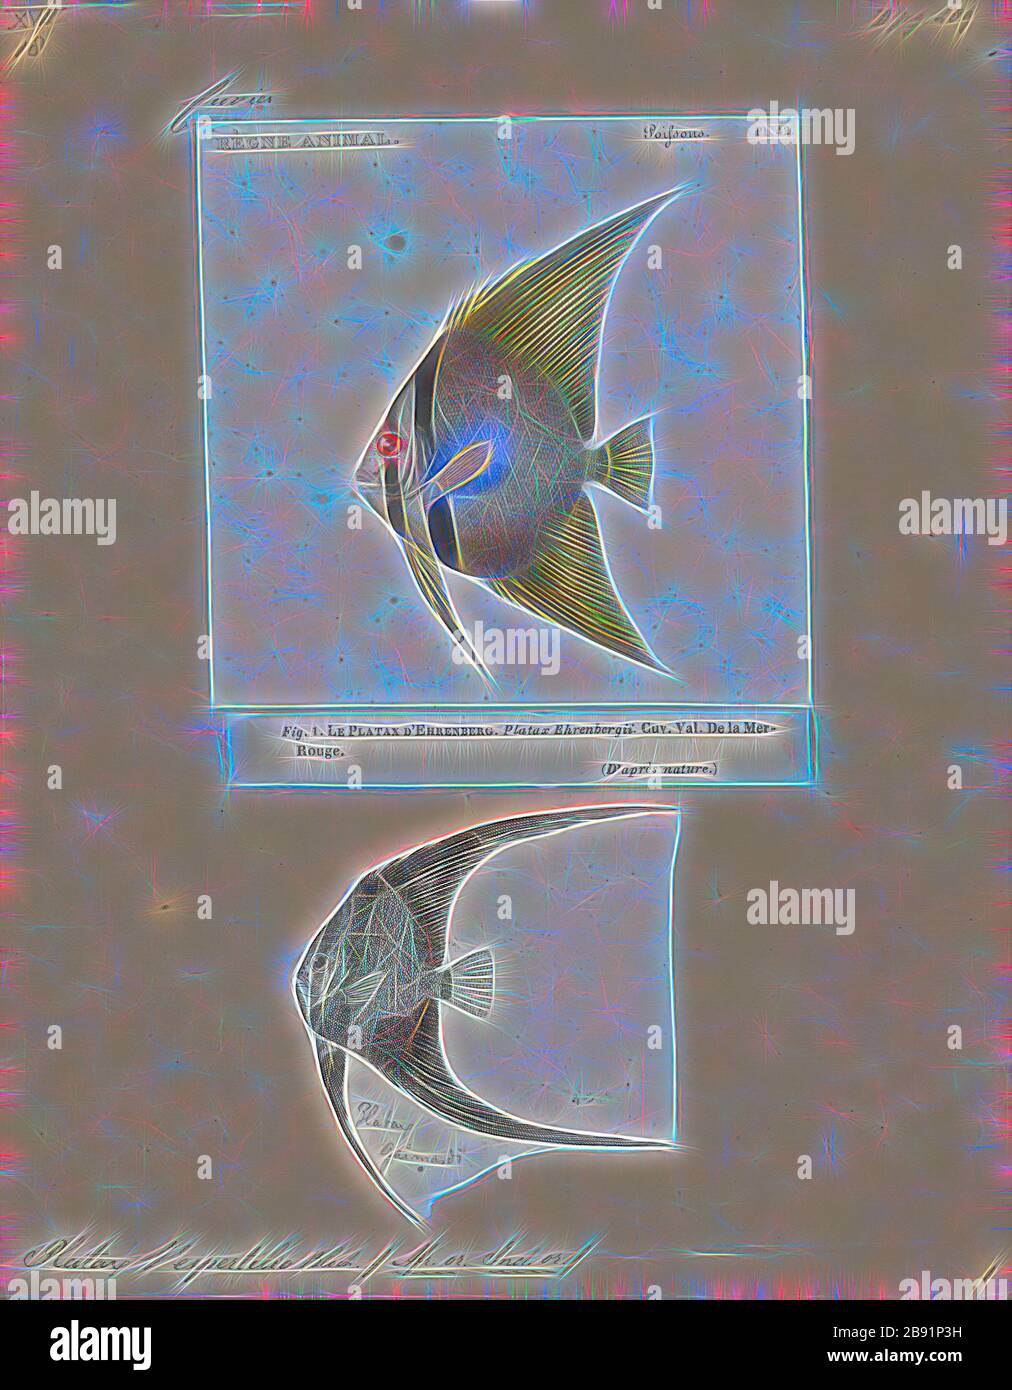 Platax vespertilio, Print, Platax ist eine Gattung indo-pazifischer, mit Riffen assoziierter Fische, die zur Familie Ephippippen gehört. Derzeit gibt es fünf bekannte Arten, die allgemein zur Gattung gehören.Sie sind eine der Fischtaxa, die allgemein als Batfish bekannt ist., 1700-1880, von Gibon neu vorgestellt, Design von warmfröhlichem Leuchten von Helligkeit und Lichtstrahlen. Klassische Kunst mit moderner Note neu erfunden. Fotografie, inspiriert vom Futurismus, die dynamische Energie moderner Technologie, Bewegung, Geschwindigkeit und Kultur revolutionieren. Stockfoto